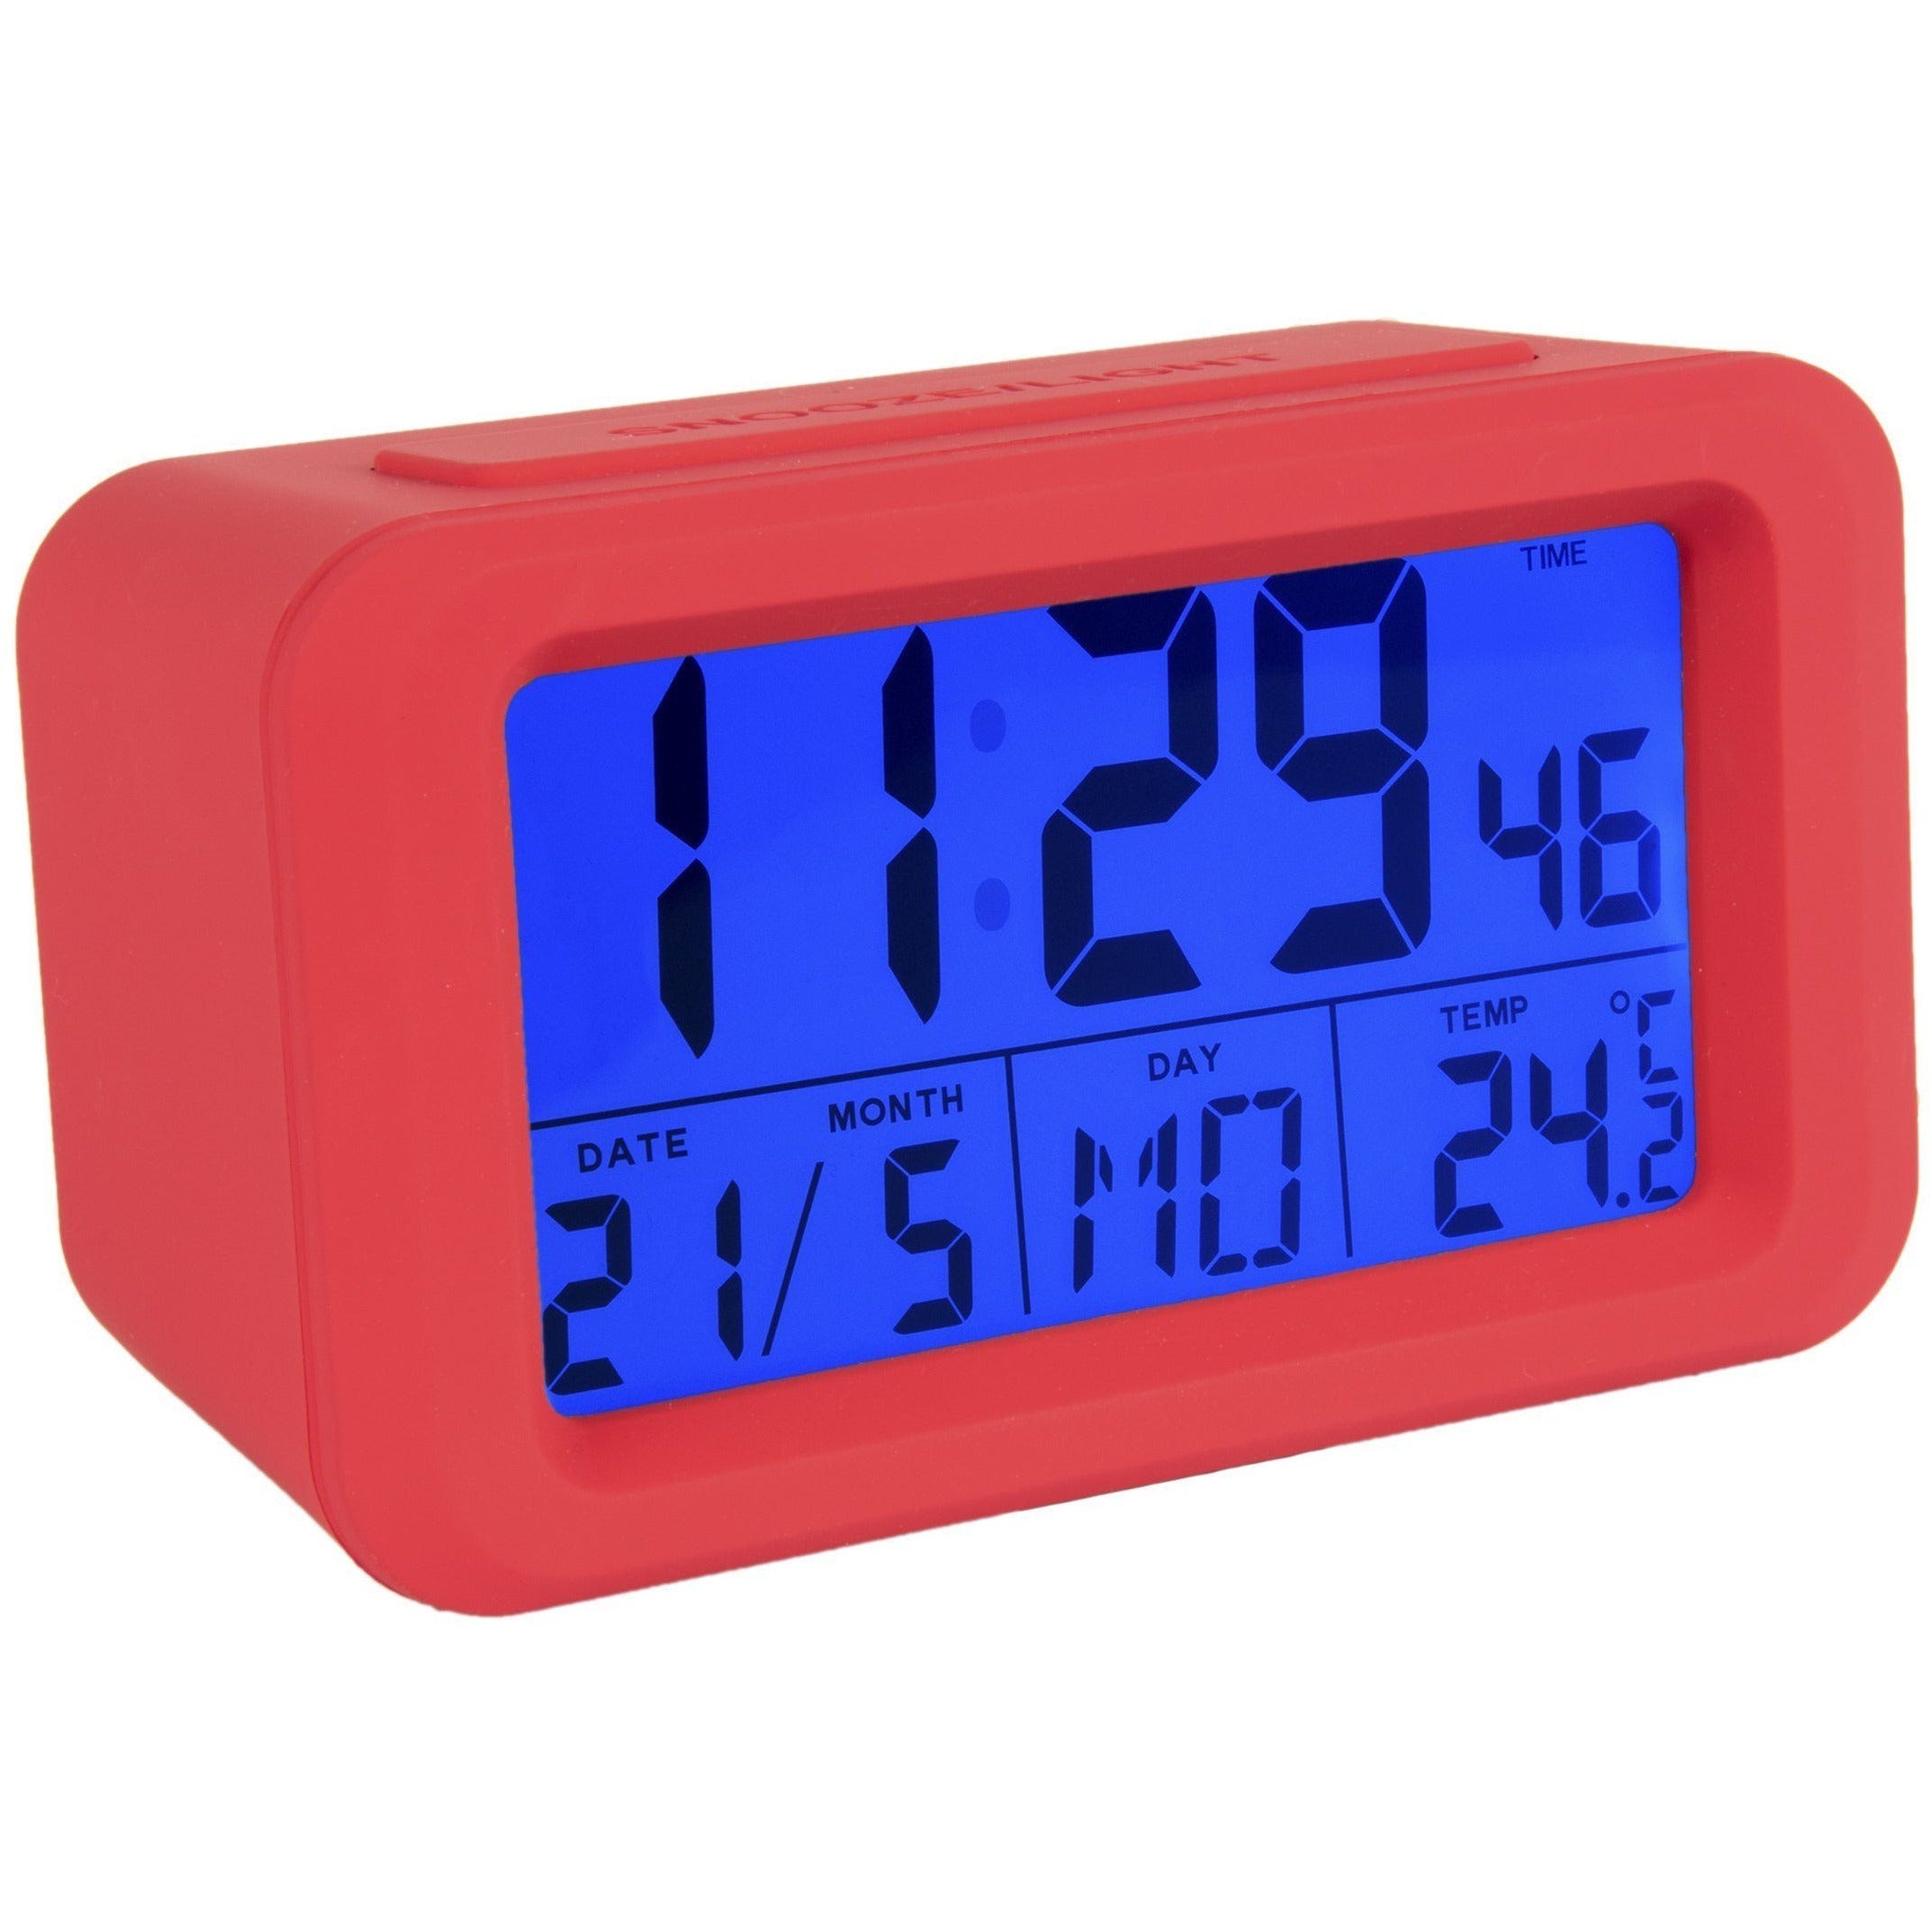 Fisura – Reloj despertador digital rojo con LED. Reloj indicador de fecha y  temperatura. Botón Snooze. 2 Pilas AAA. Goma ABS. Medidas: 12 x 5,5 x 7